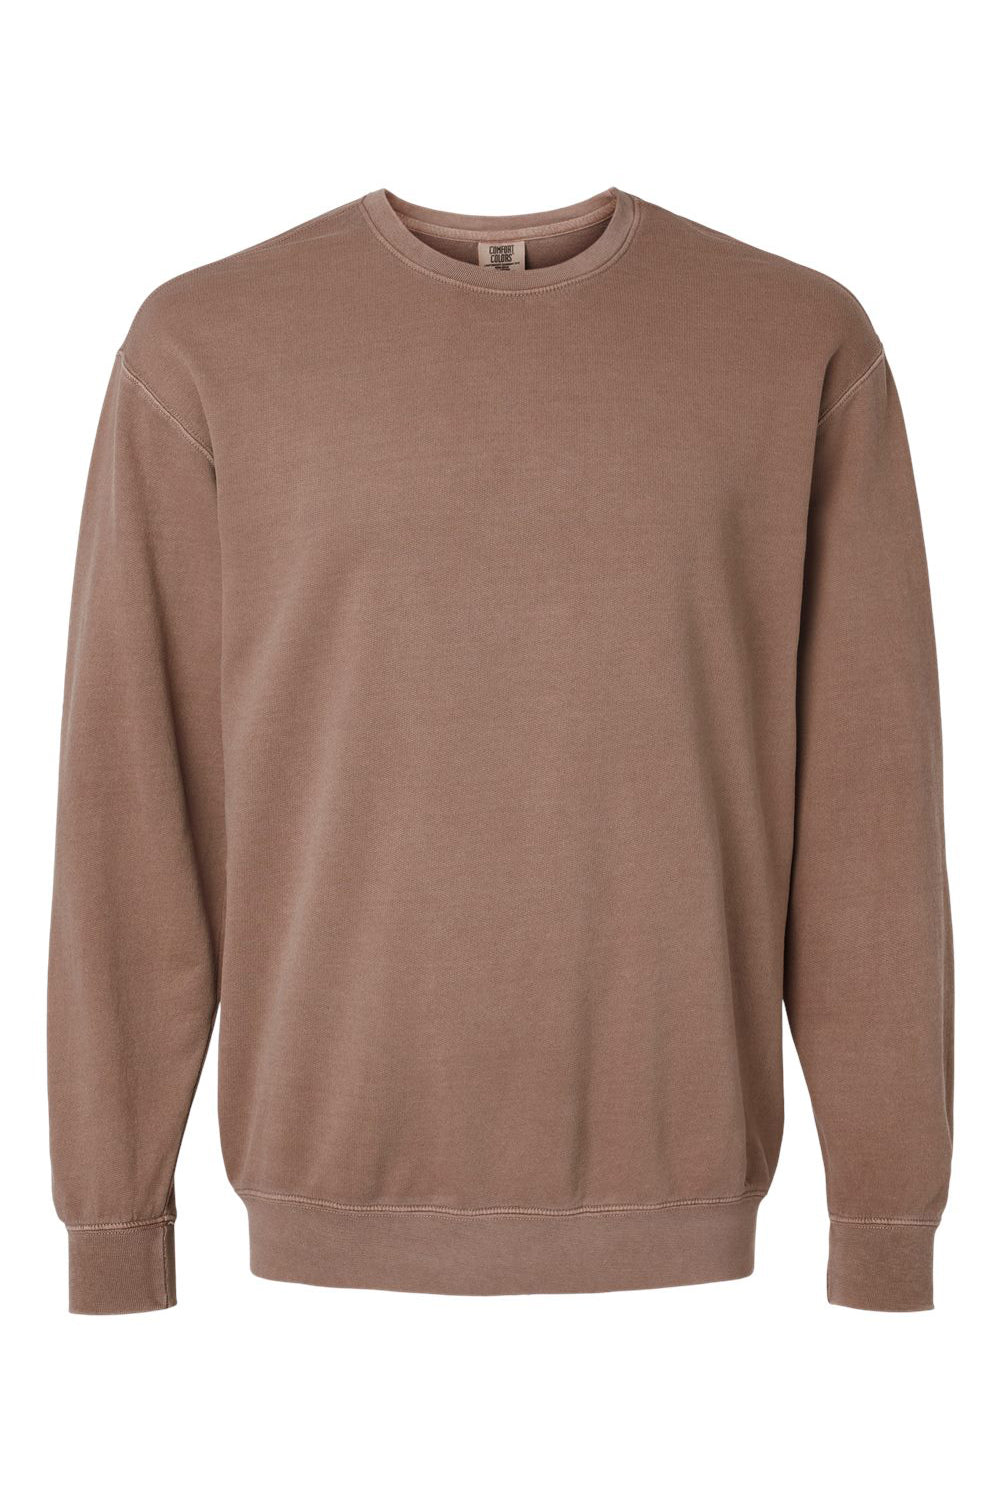 Comfort Colors 1466 Mens Garment Dyed Fleece Crewneck Sweatshirt Espresso Brown Flat Front